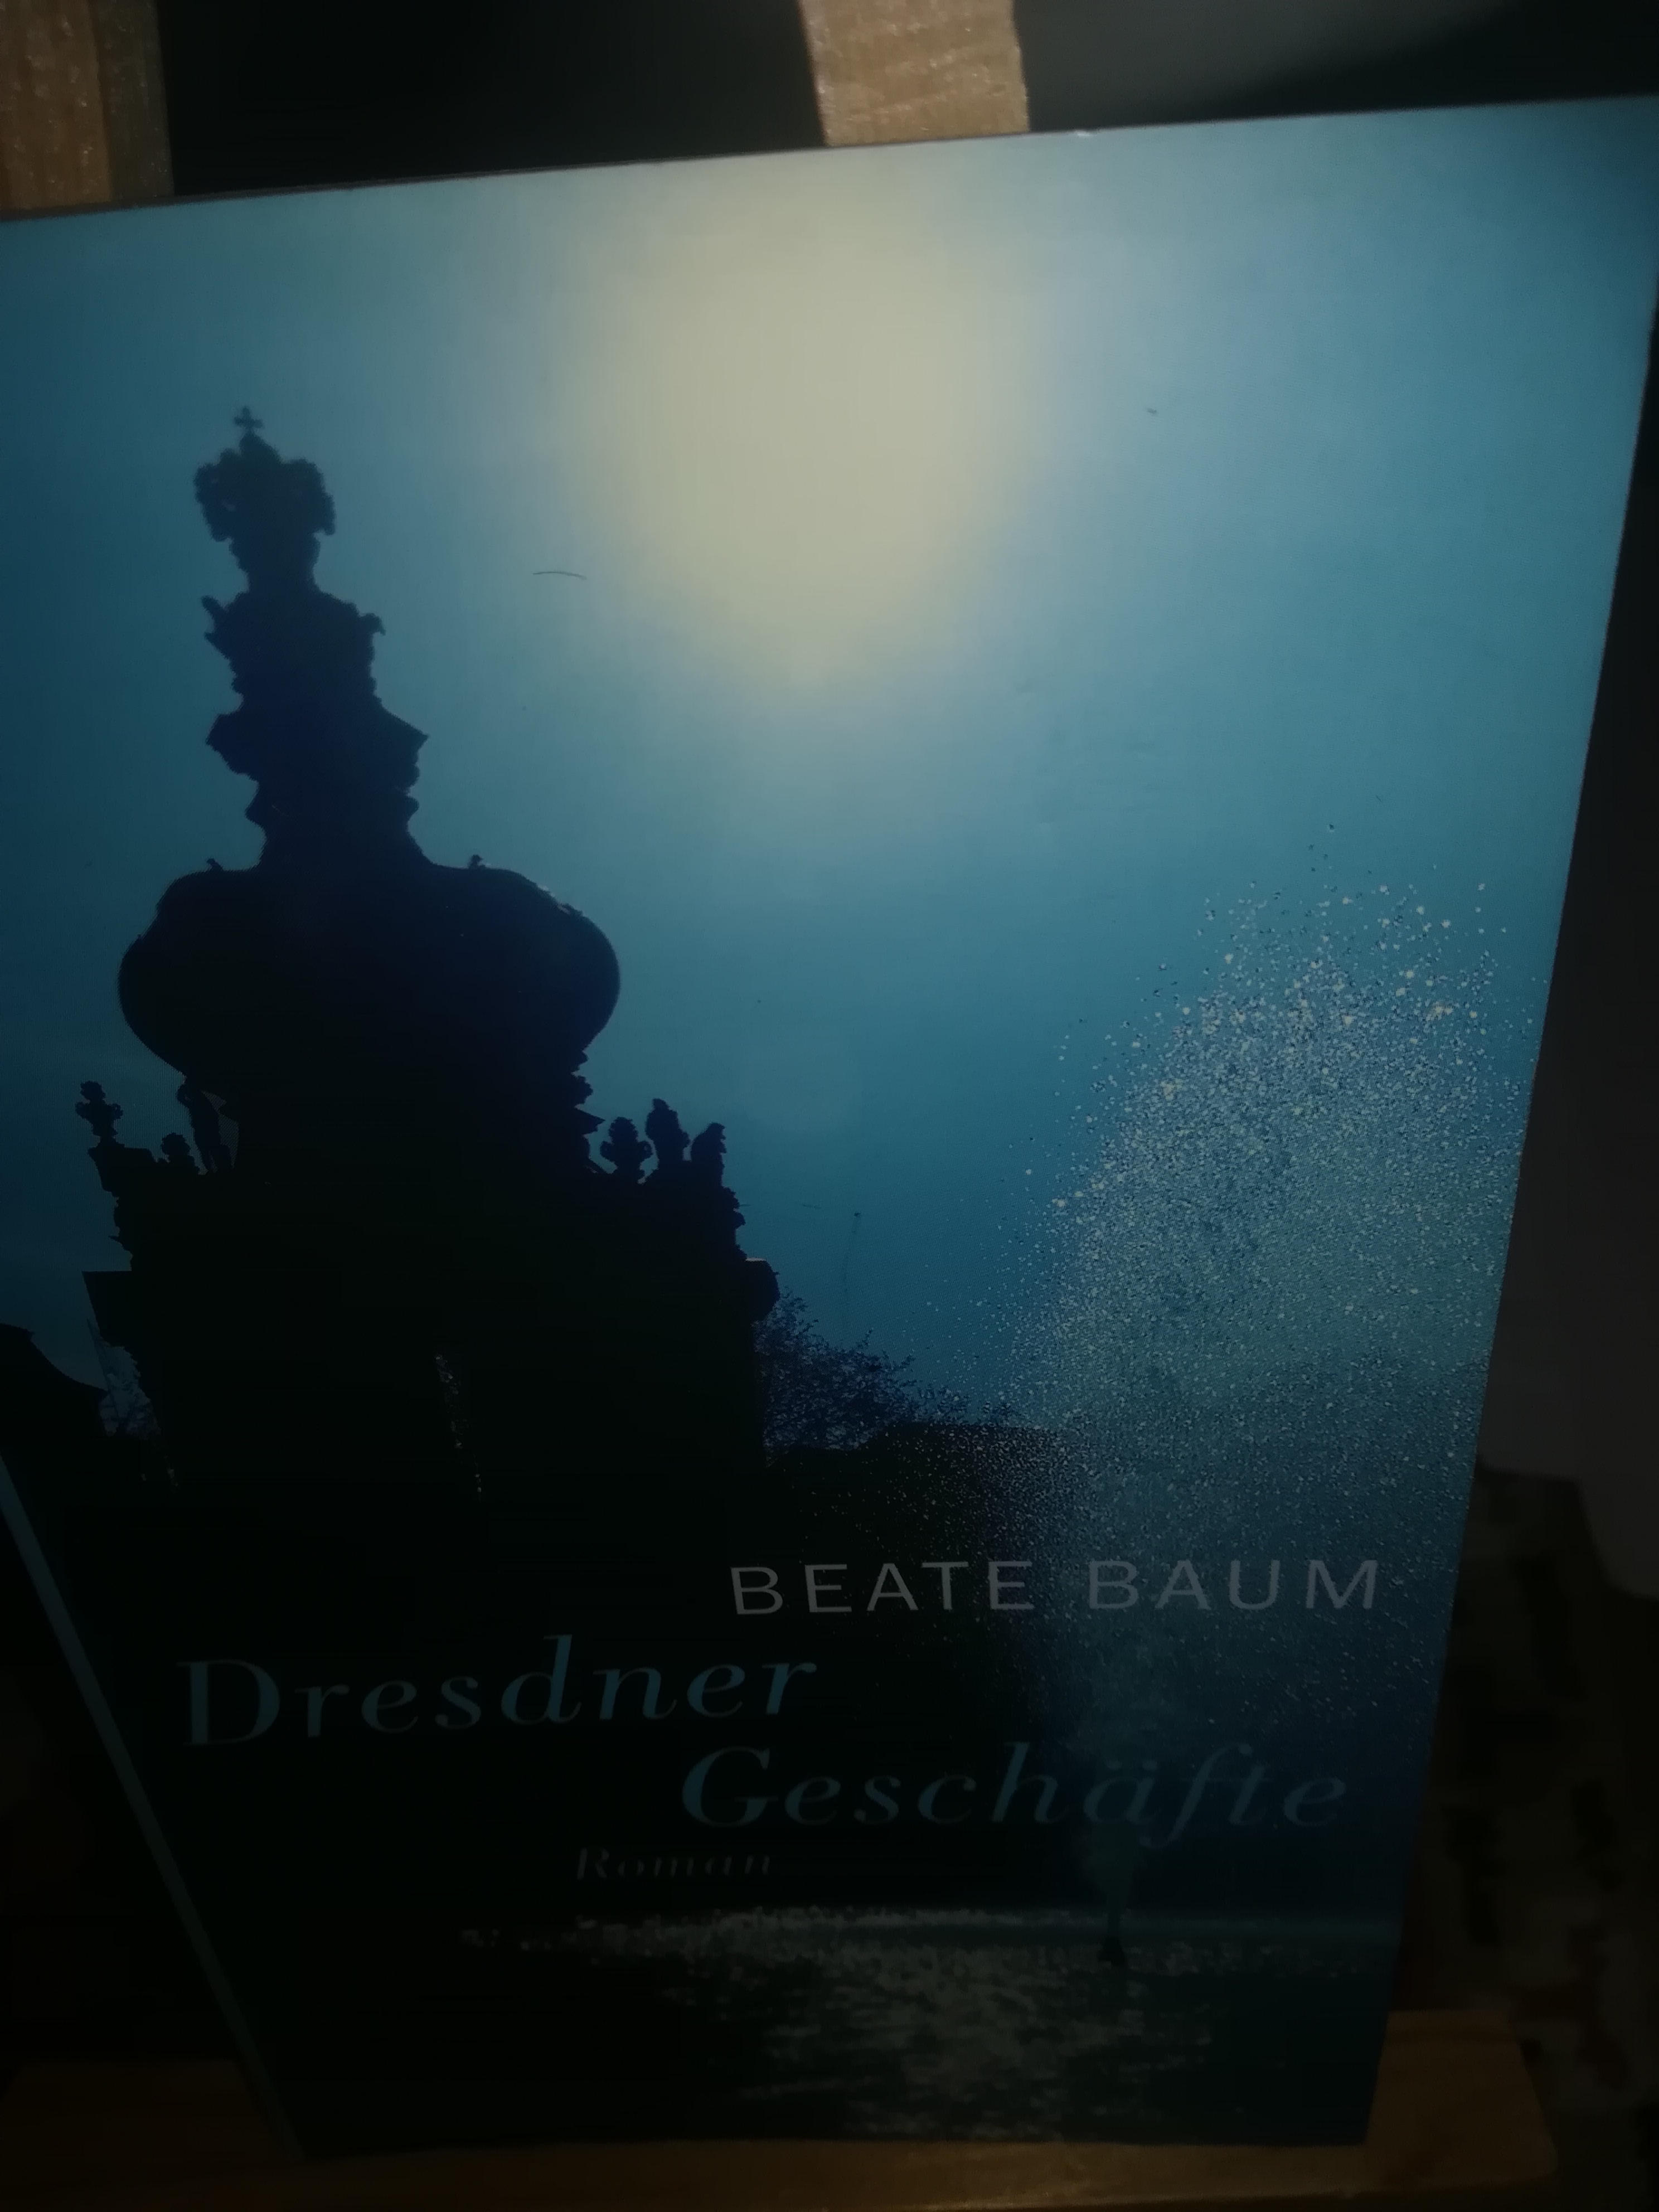 Dresdner Geschäfte - Baum Beate